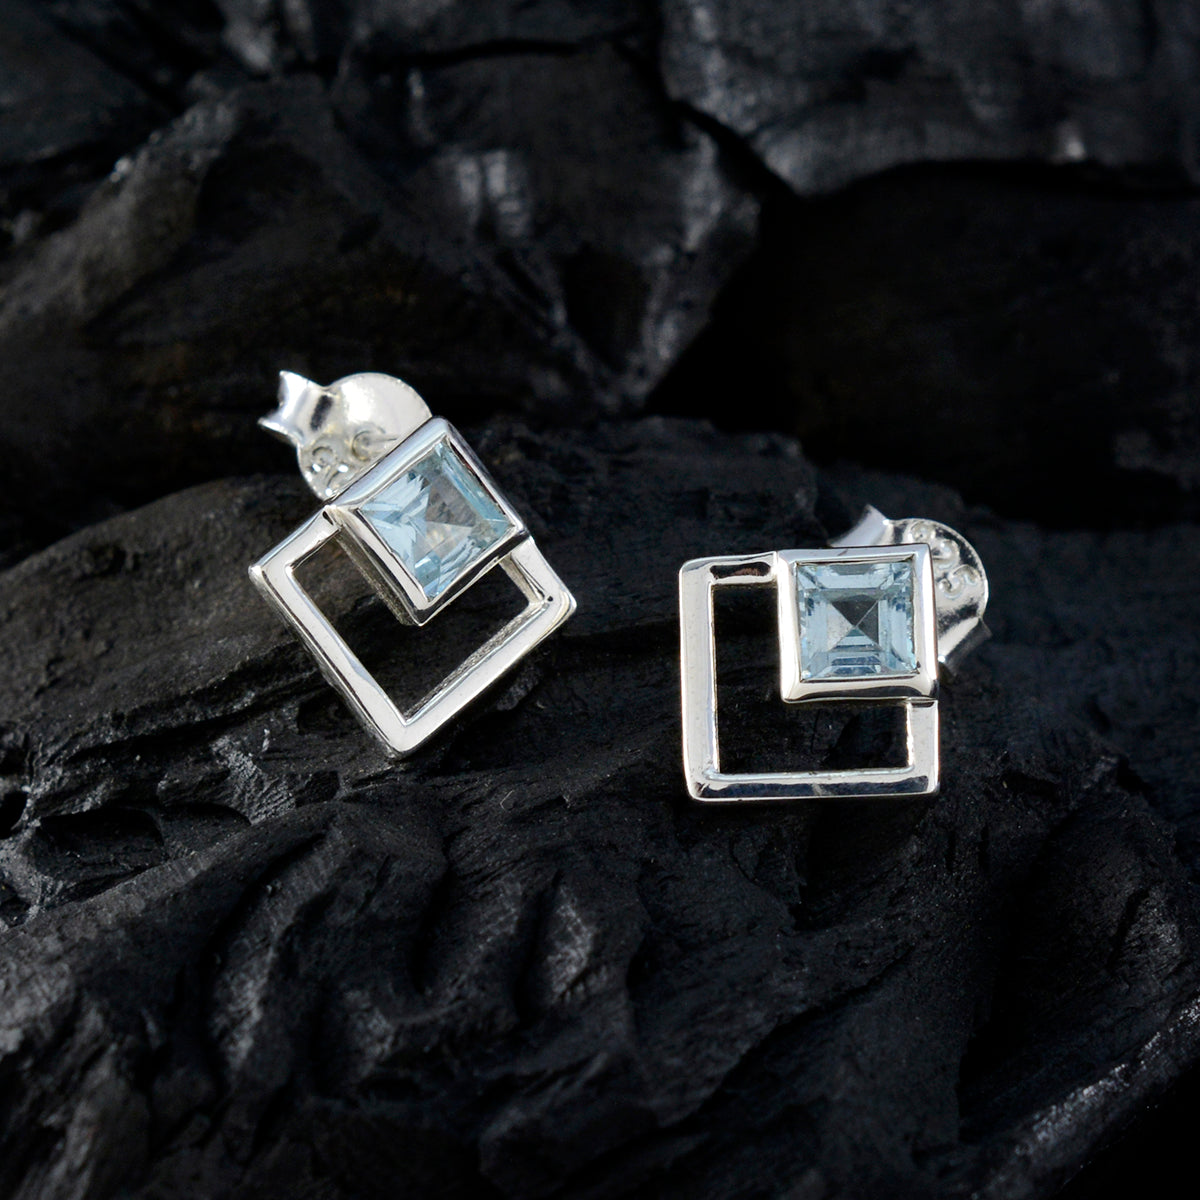 Riyo Fanciable Sterling Silber Ohrring für Demoiselle Blauer Topas-Ohrring, Lünettenfassung, blauer Ohrring-Ohrstecker